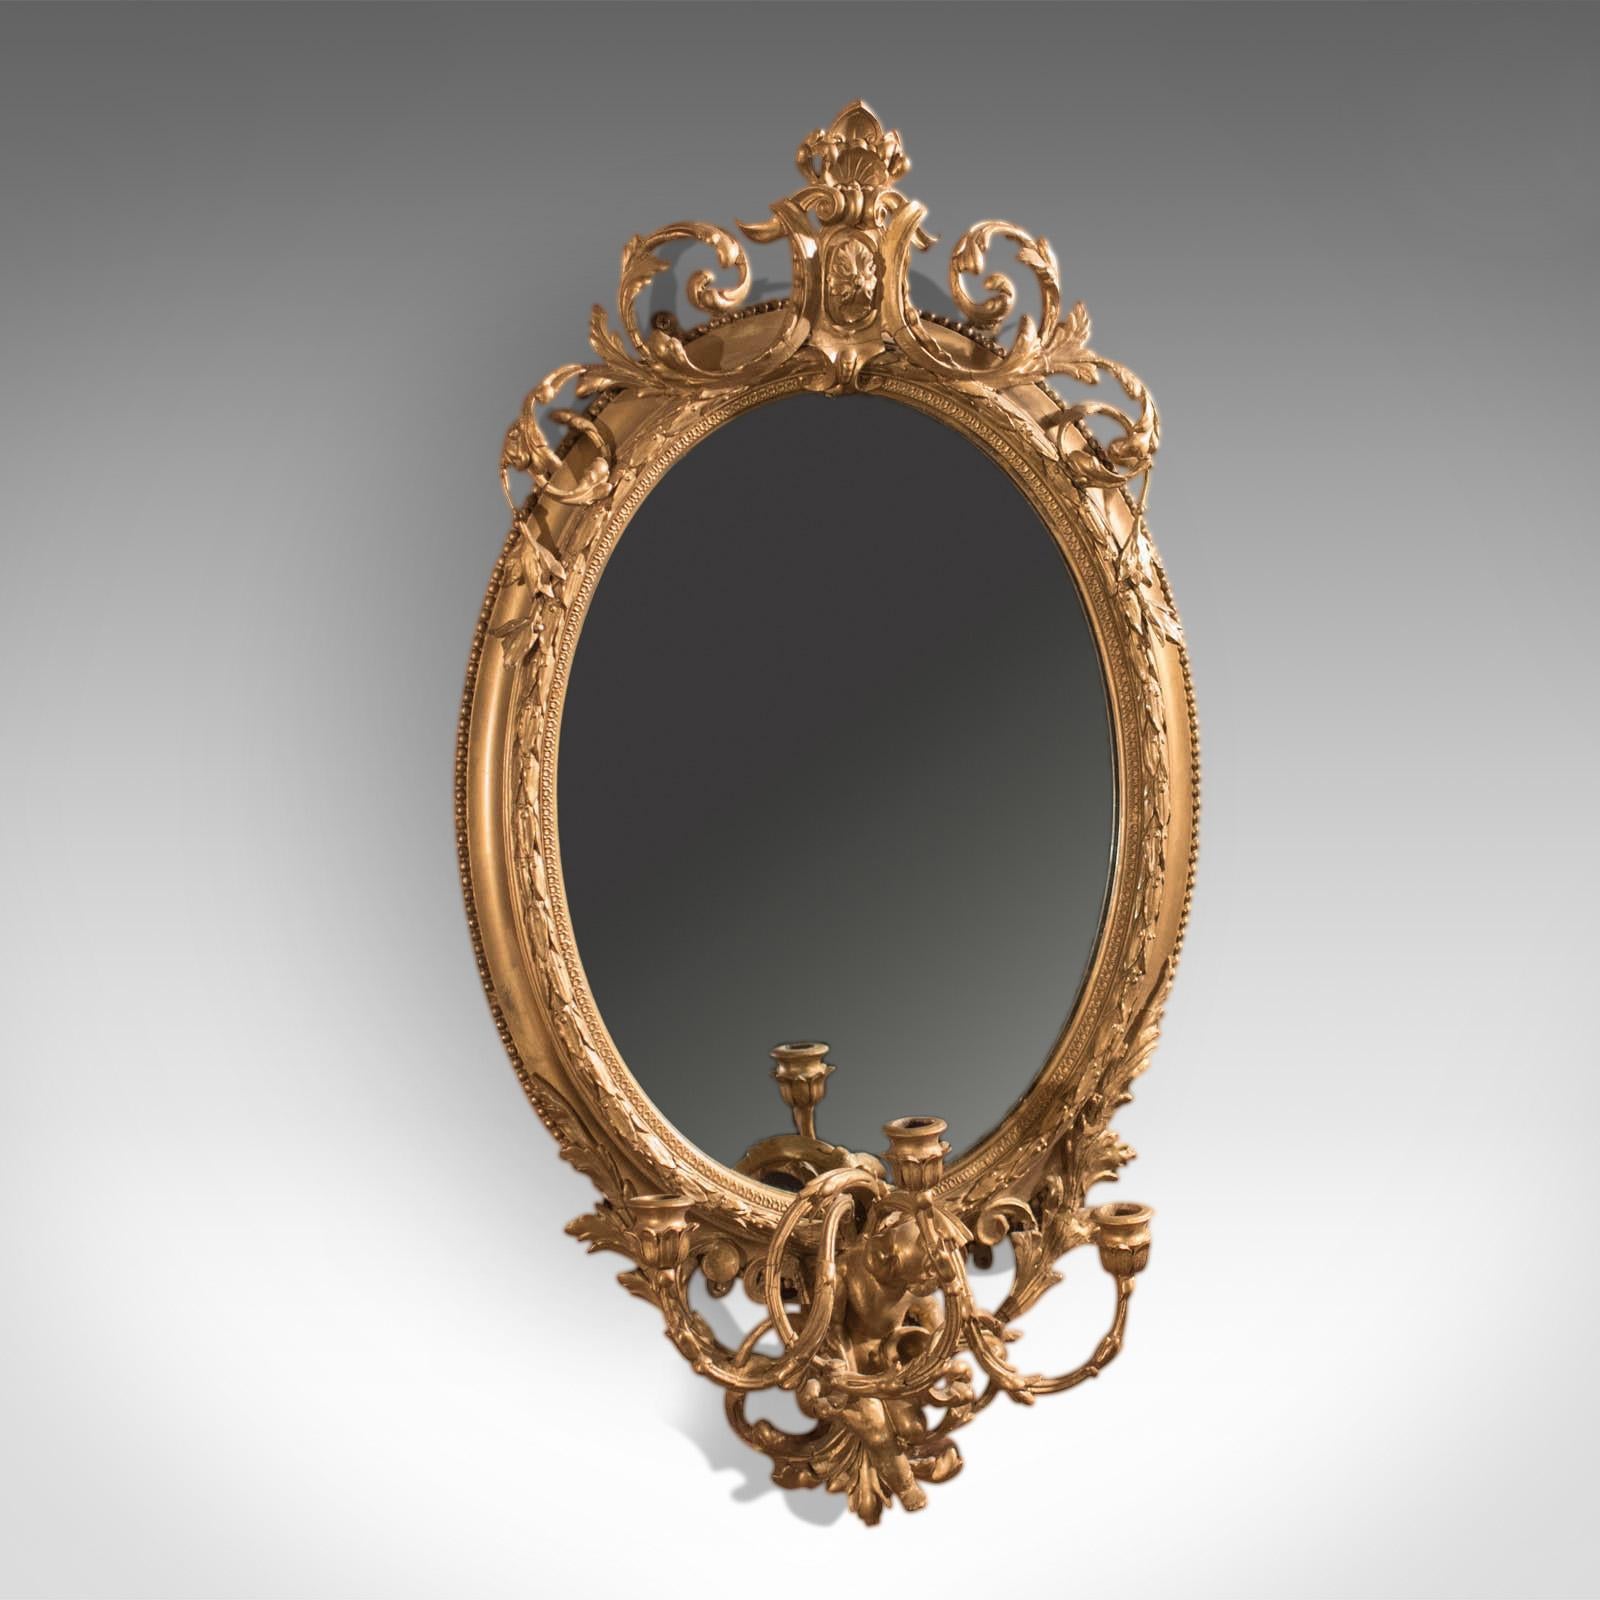 Es handelt sich um einen antiken Girandole-Spiegel aus der Zeit der Wende vom 18. zum 19. Jahrhundert, also um 1800.

Ein großartiges Beispiel, dieser Wandspiegel ist in Vergoldung und Gesso gerahmt, die Form um die spätere Spiegelplatte zeigt